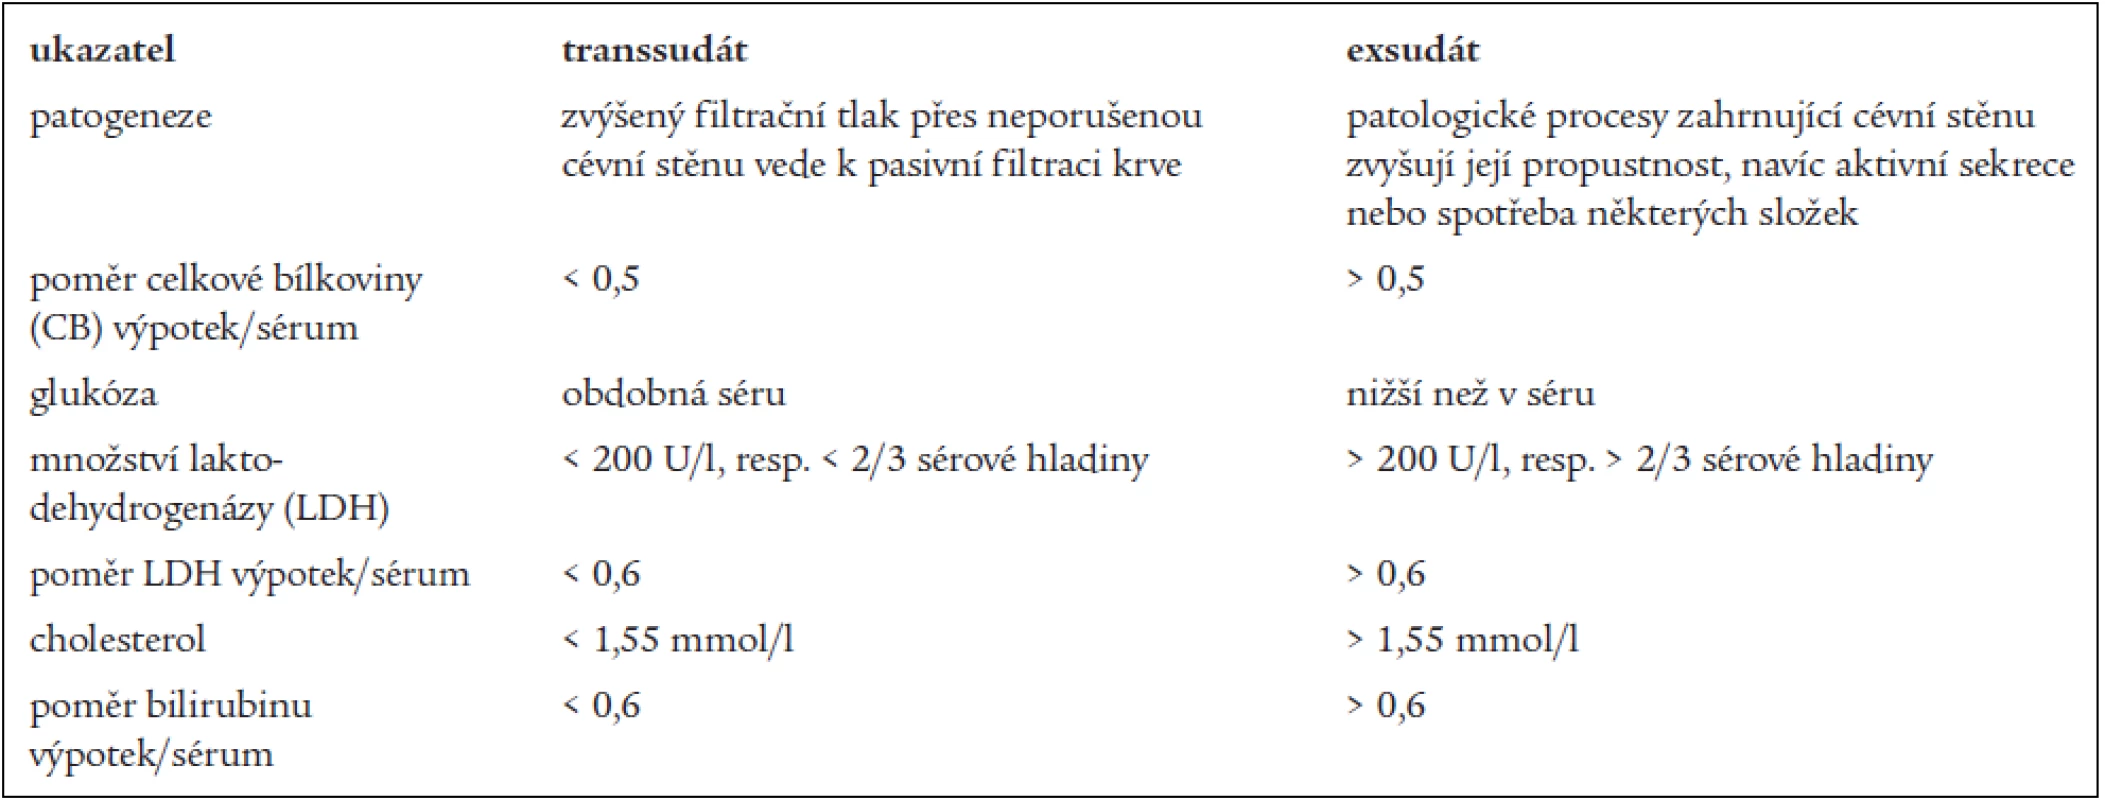 Pomocná diagnostická kritéria transsudát versus exsudát (tzv. Lightova kritéria se týkají celkové bílkoviny a LDH).